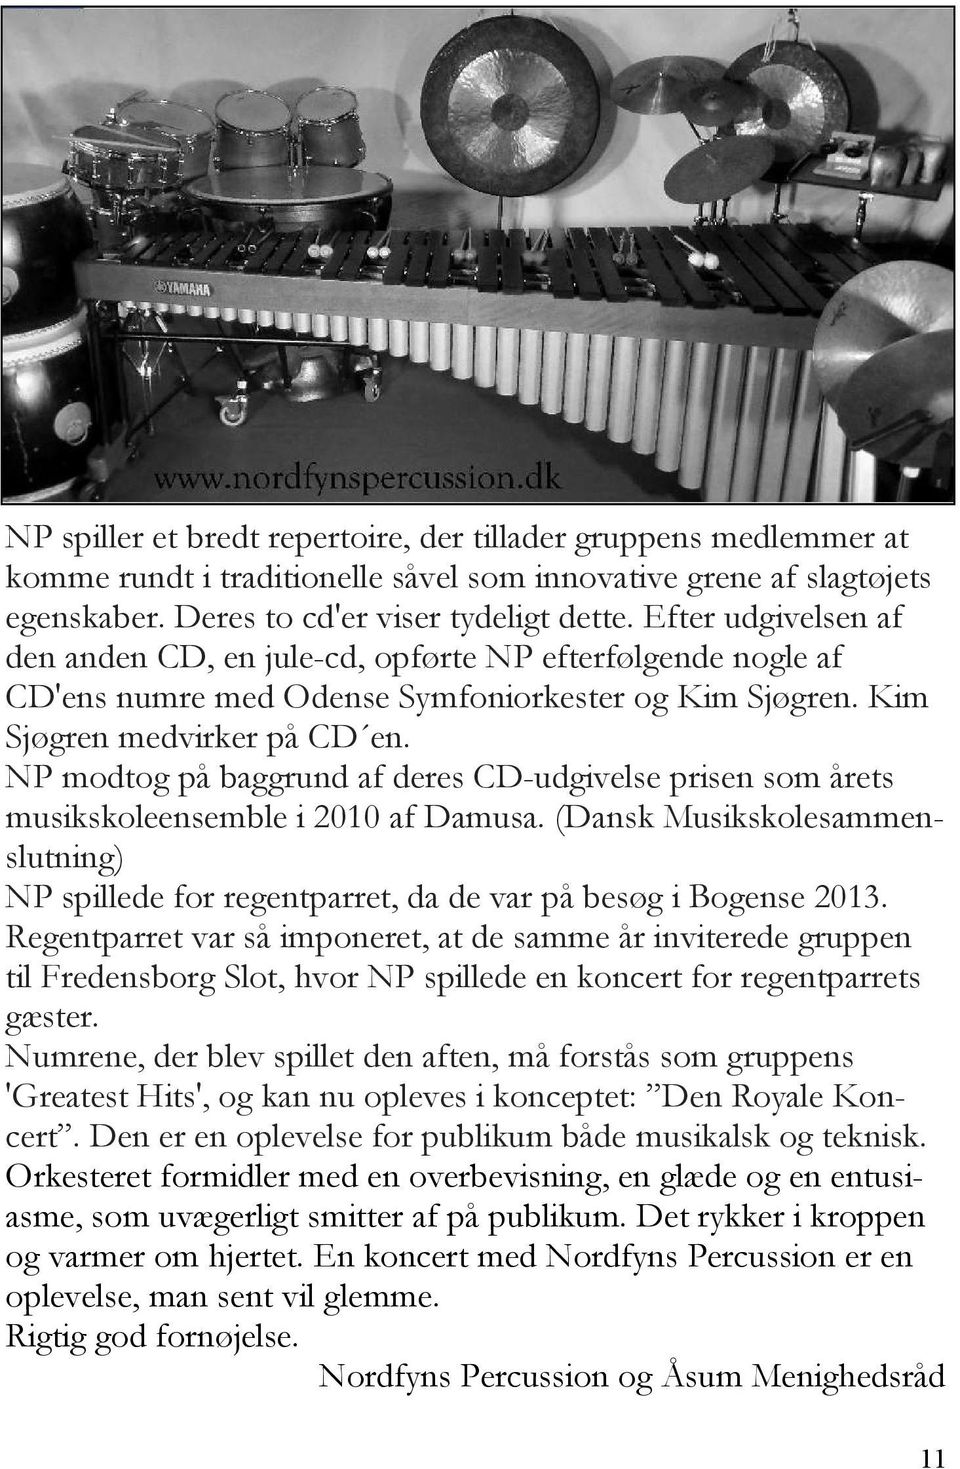 NP modtog på baggrund af deres CD-udgivelse prisen som årets musikskoleensemble i 2010 af Damusa. (Dansk Musikskolesammenslutning) NP spillede for regentparret, da de var på besøg i Bogense 2013.